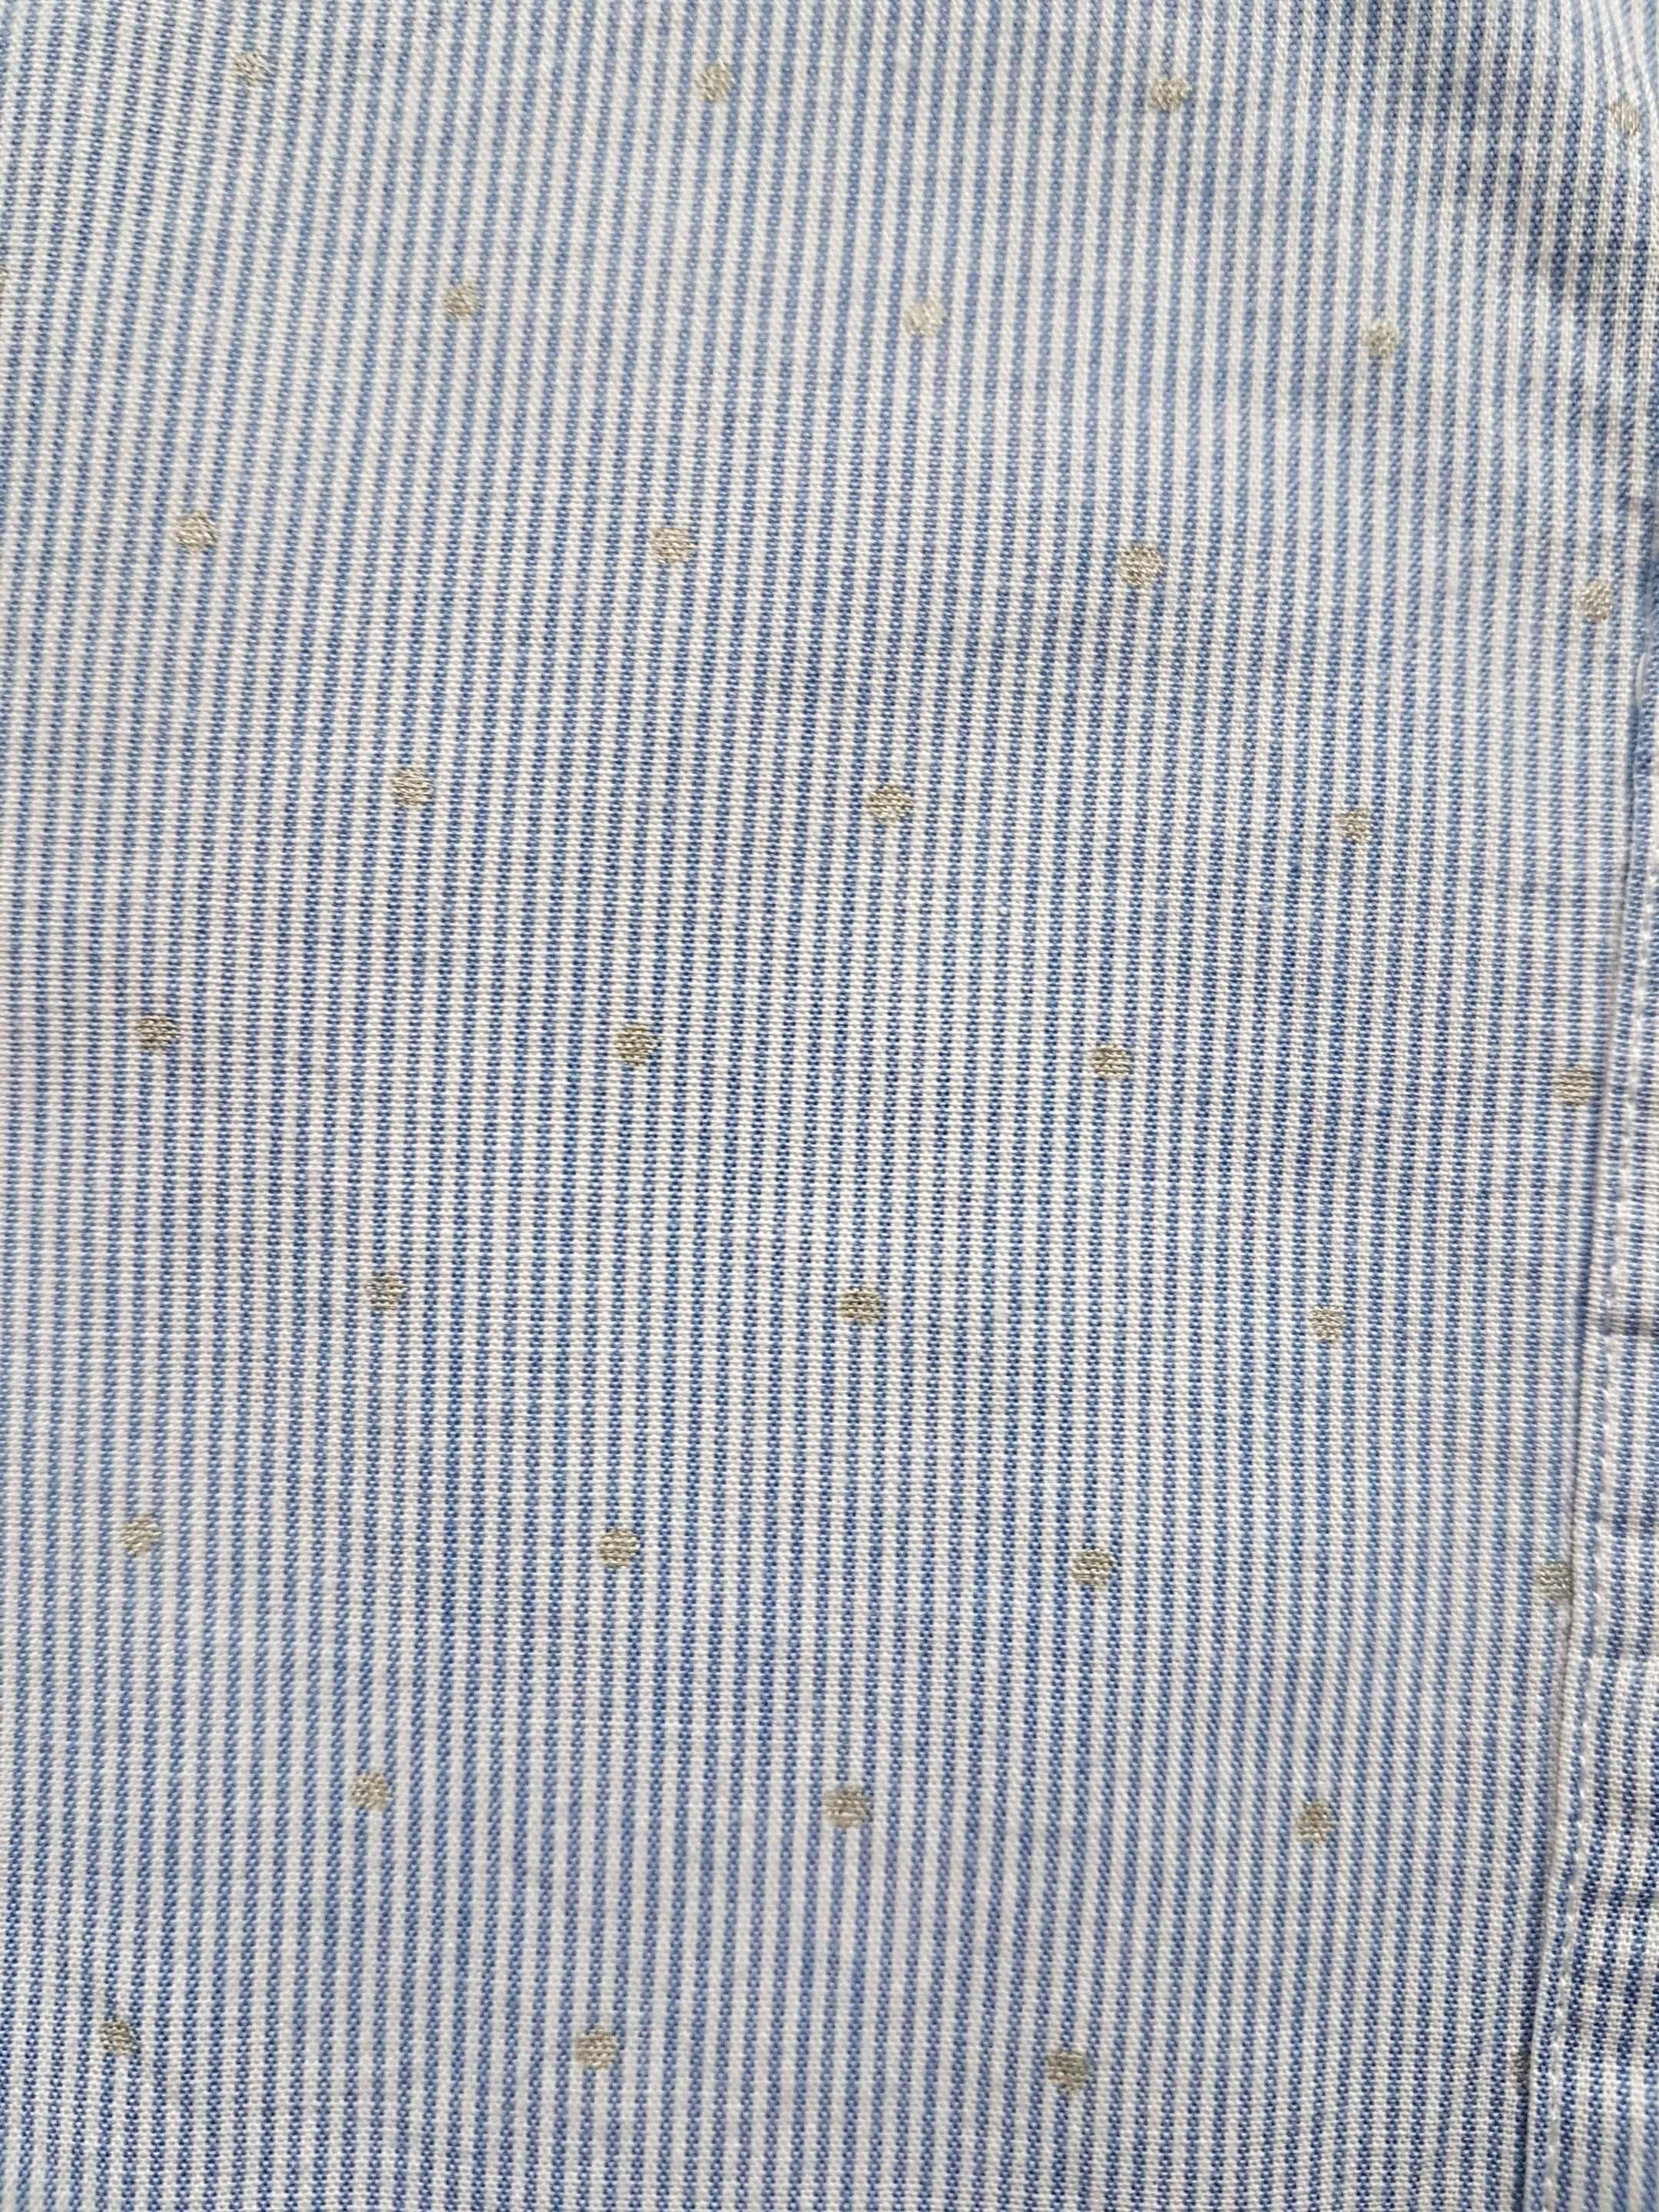 Koszula dziewczęca galowa niebieska z falbanką kołnierzyk r 134 8-9lat